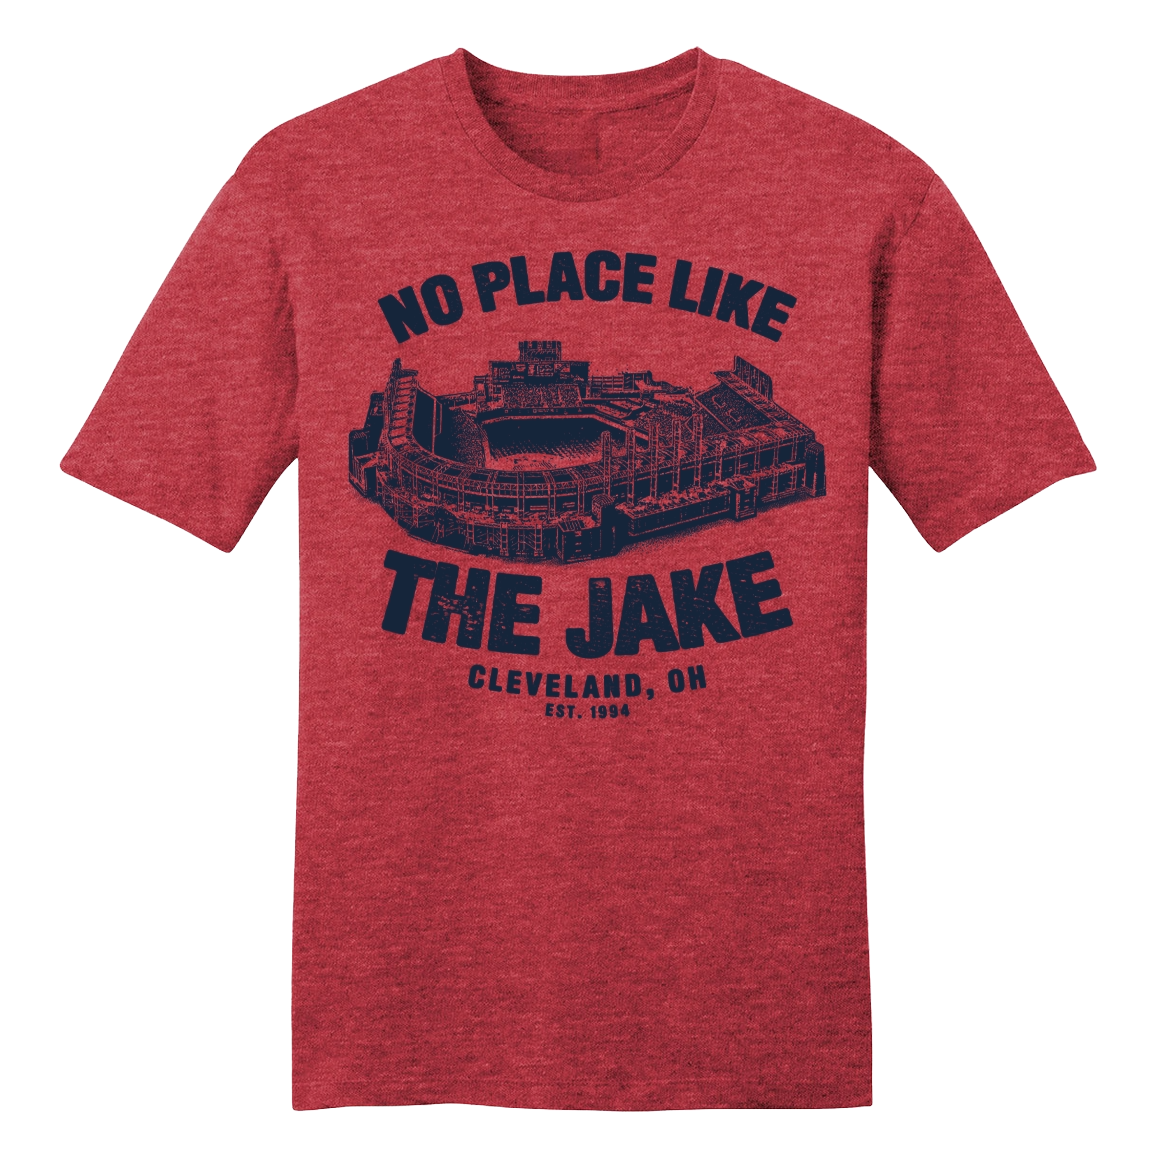 The Jake Stadium Tee